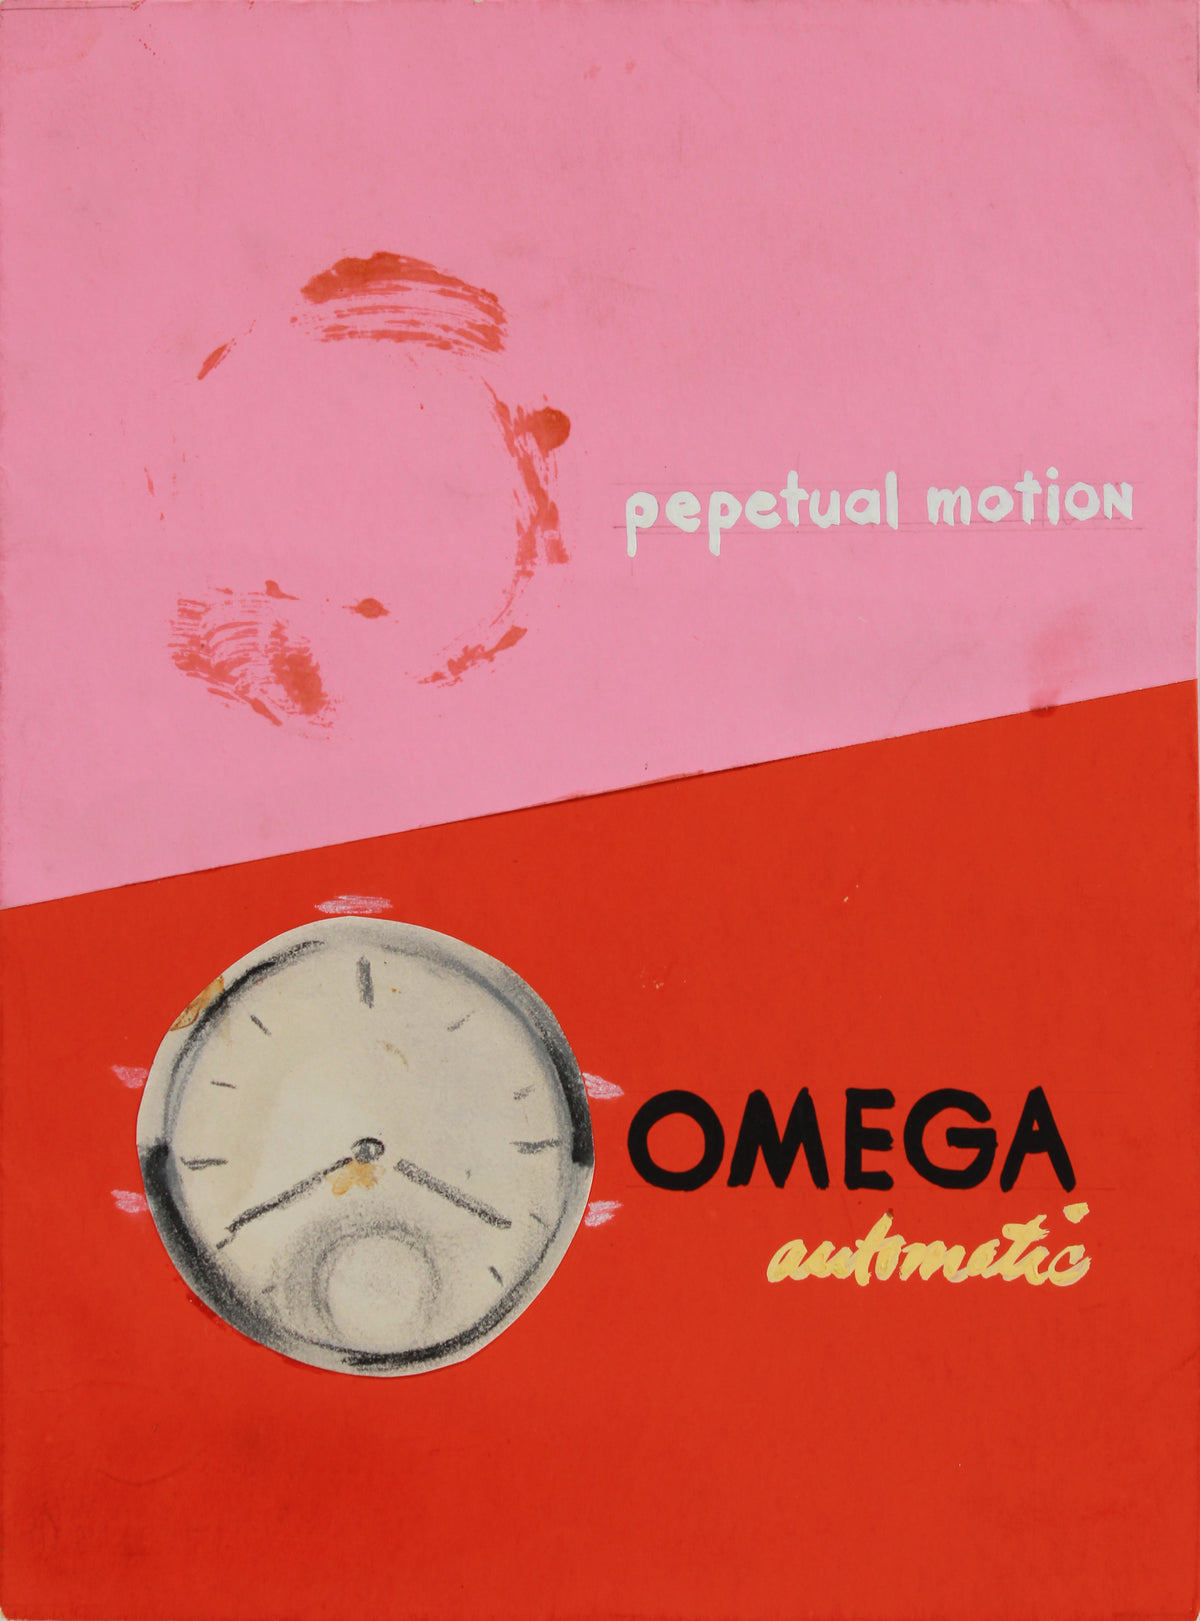 &lt;I&gt;Pepetual Motion - Omega Automatic&lt;/I&gt; &lt;br&gt;1945 Mixed Media Collage &lt;br&gt;&lt;br&gt;#B0109